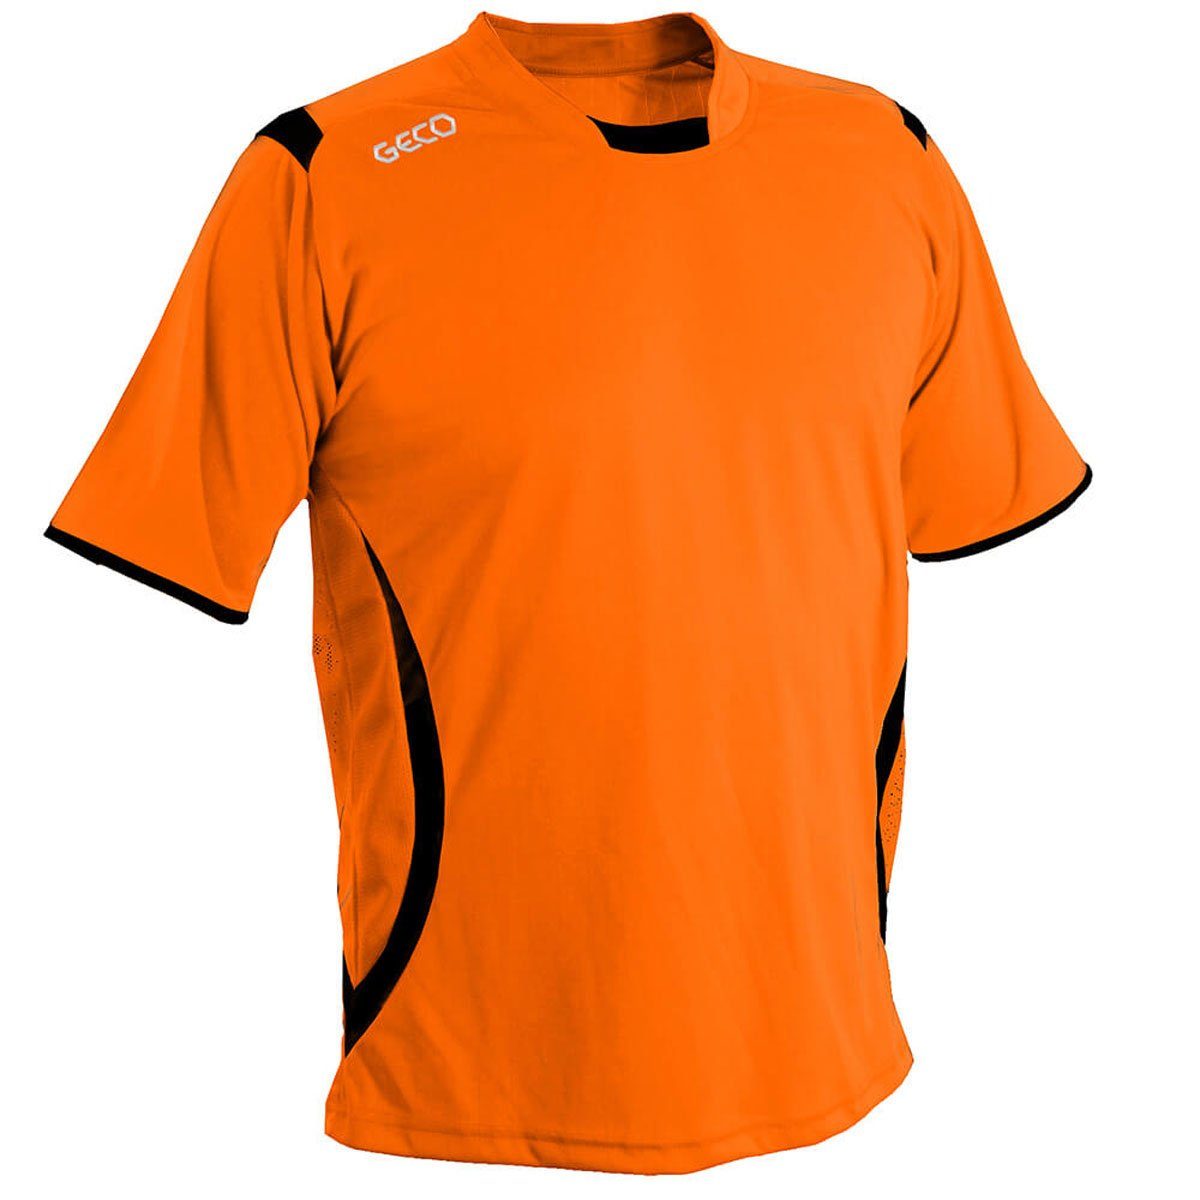 Geco Sportswear Fußballtrikot Fußballtrikot zweifarbig Fußball seitliche Mesh orange/schwarz Einsätze Trikot Levante kurzarm Geco